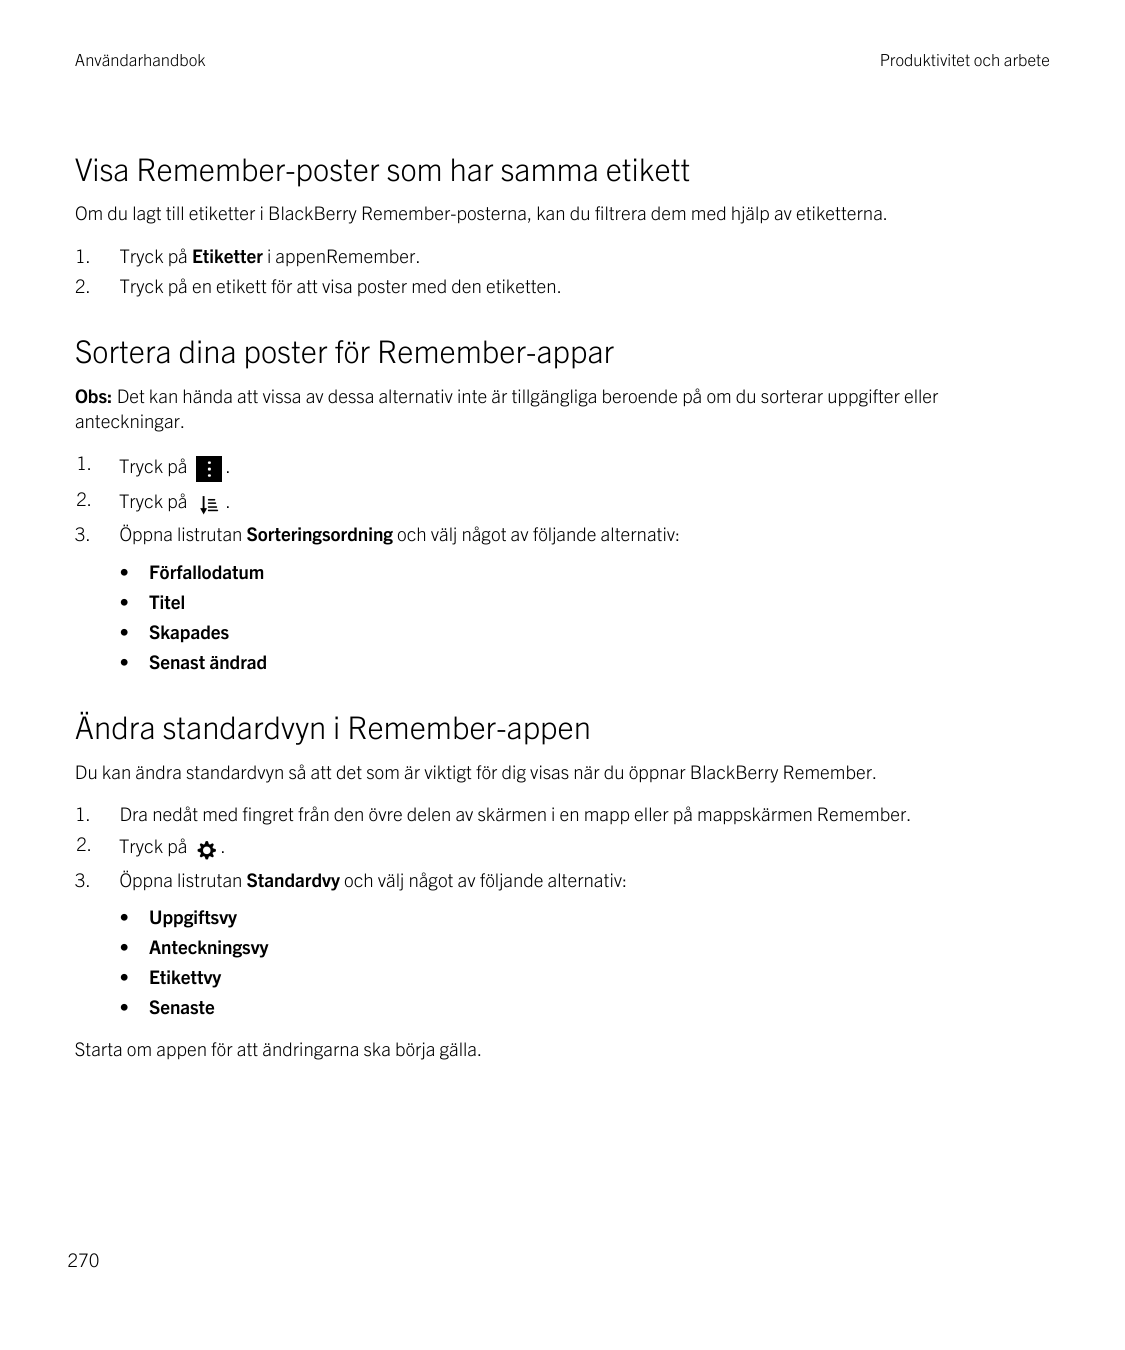 AnvändarhandbokProduktivitet och arbeteVisa Remember-poster som har samma etikettOm du lagt till etiketter i BlackBerry Remember